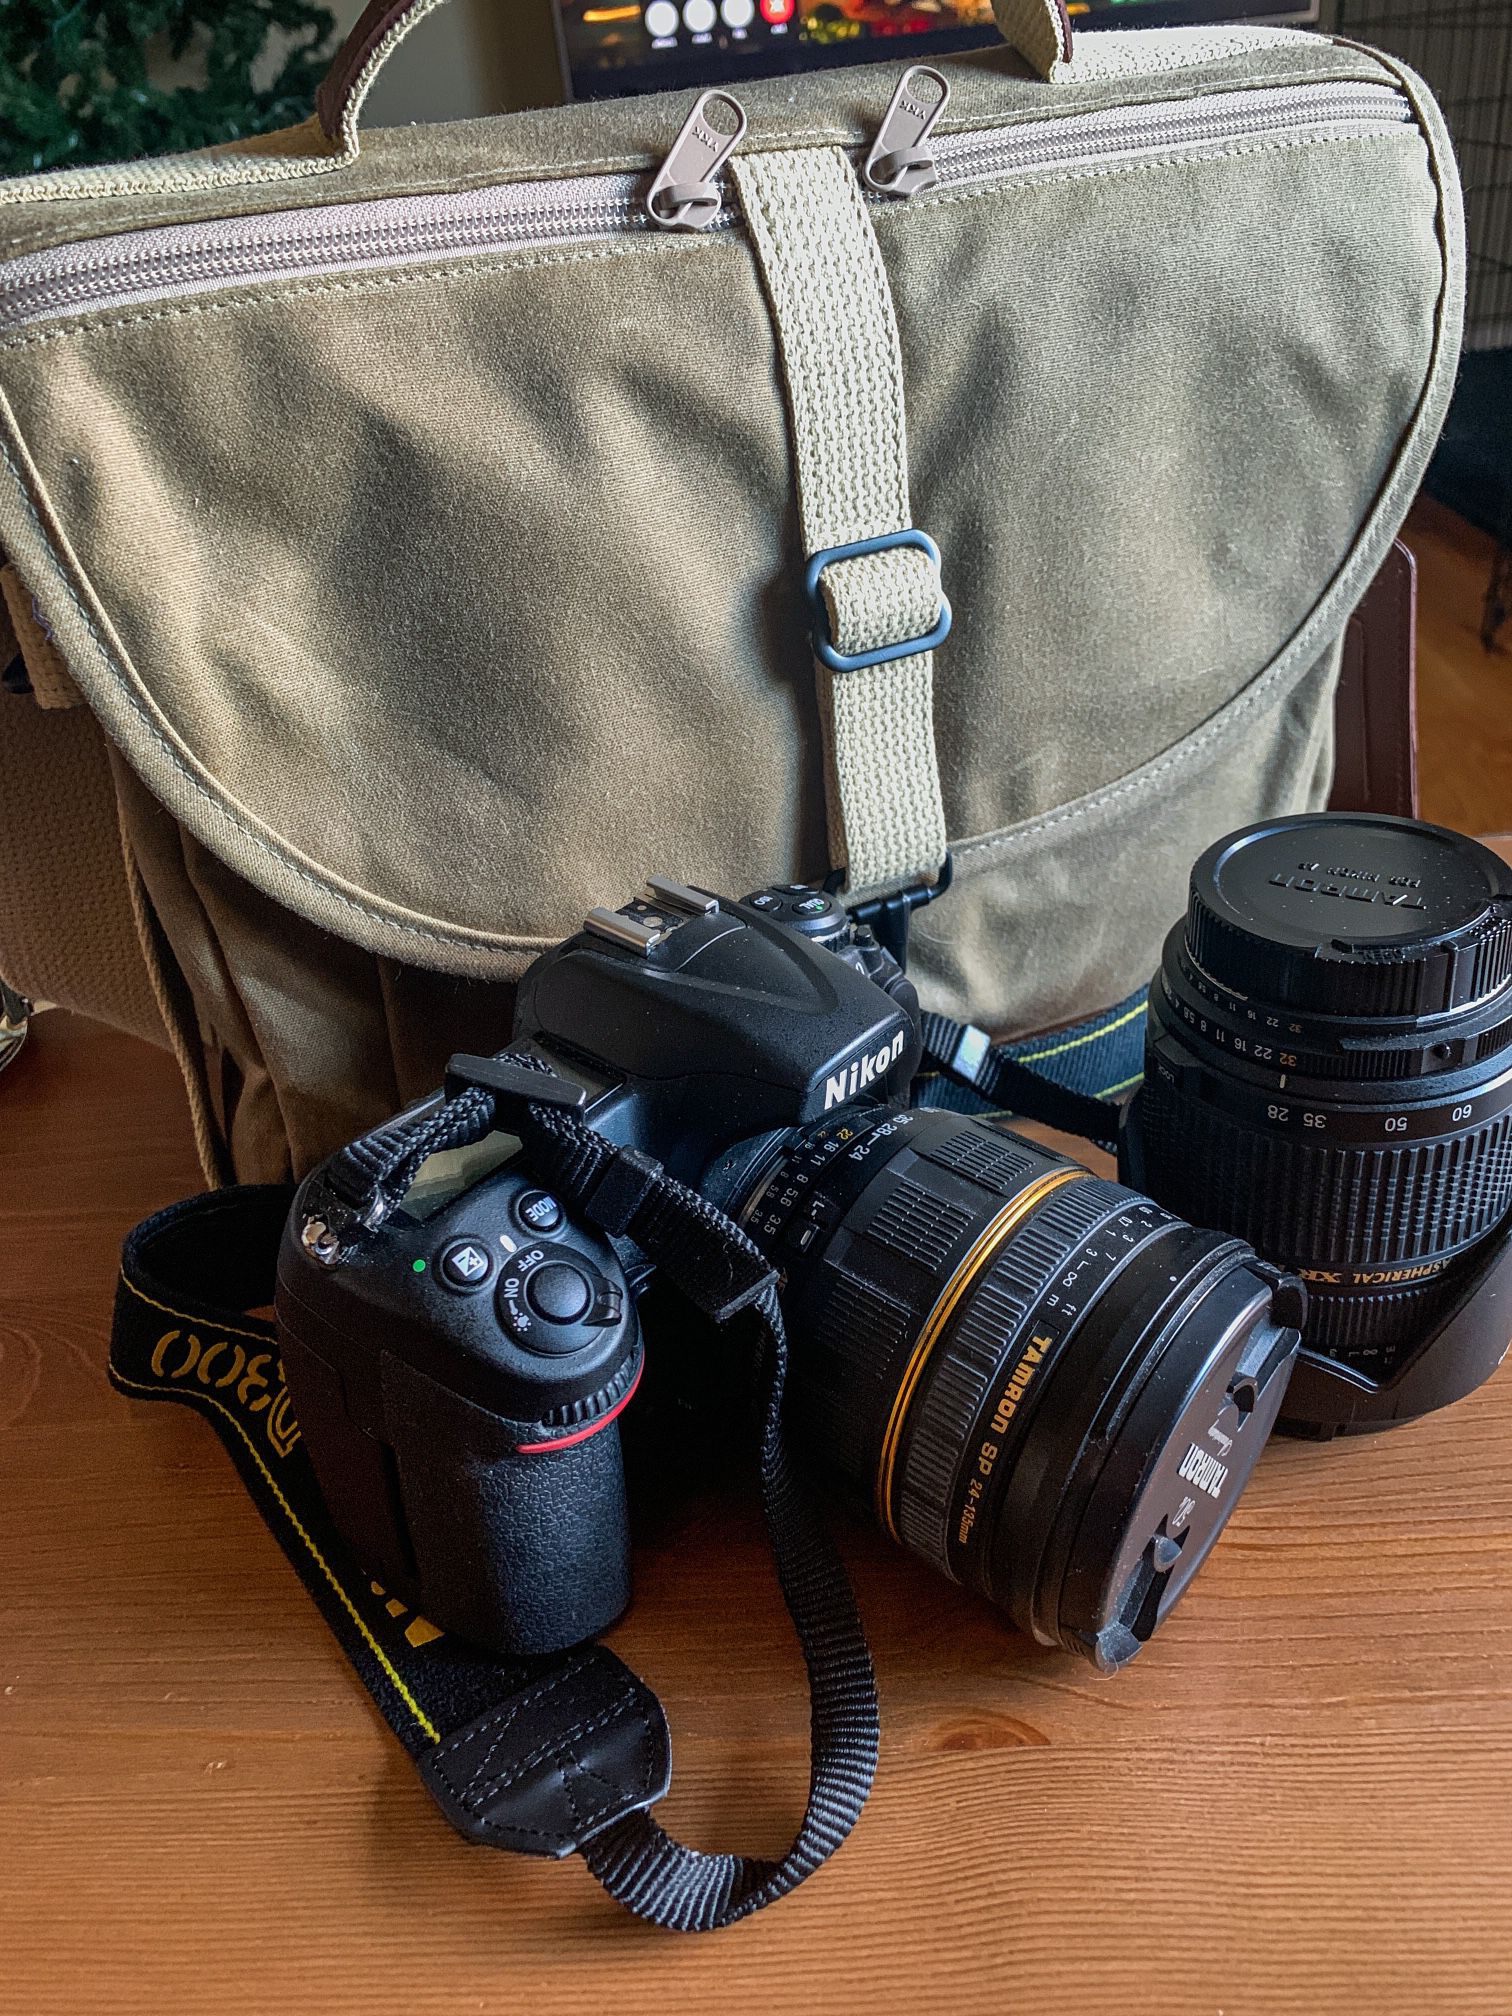 Nikon D300 W/ Two Tamron Lenses And Domke Bag